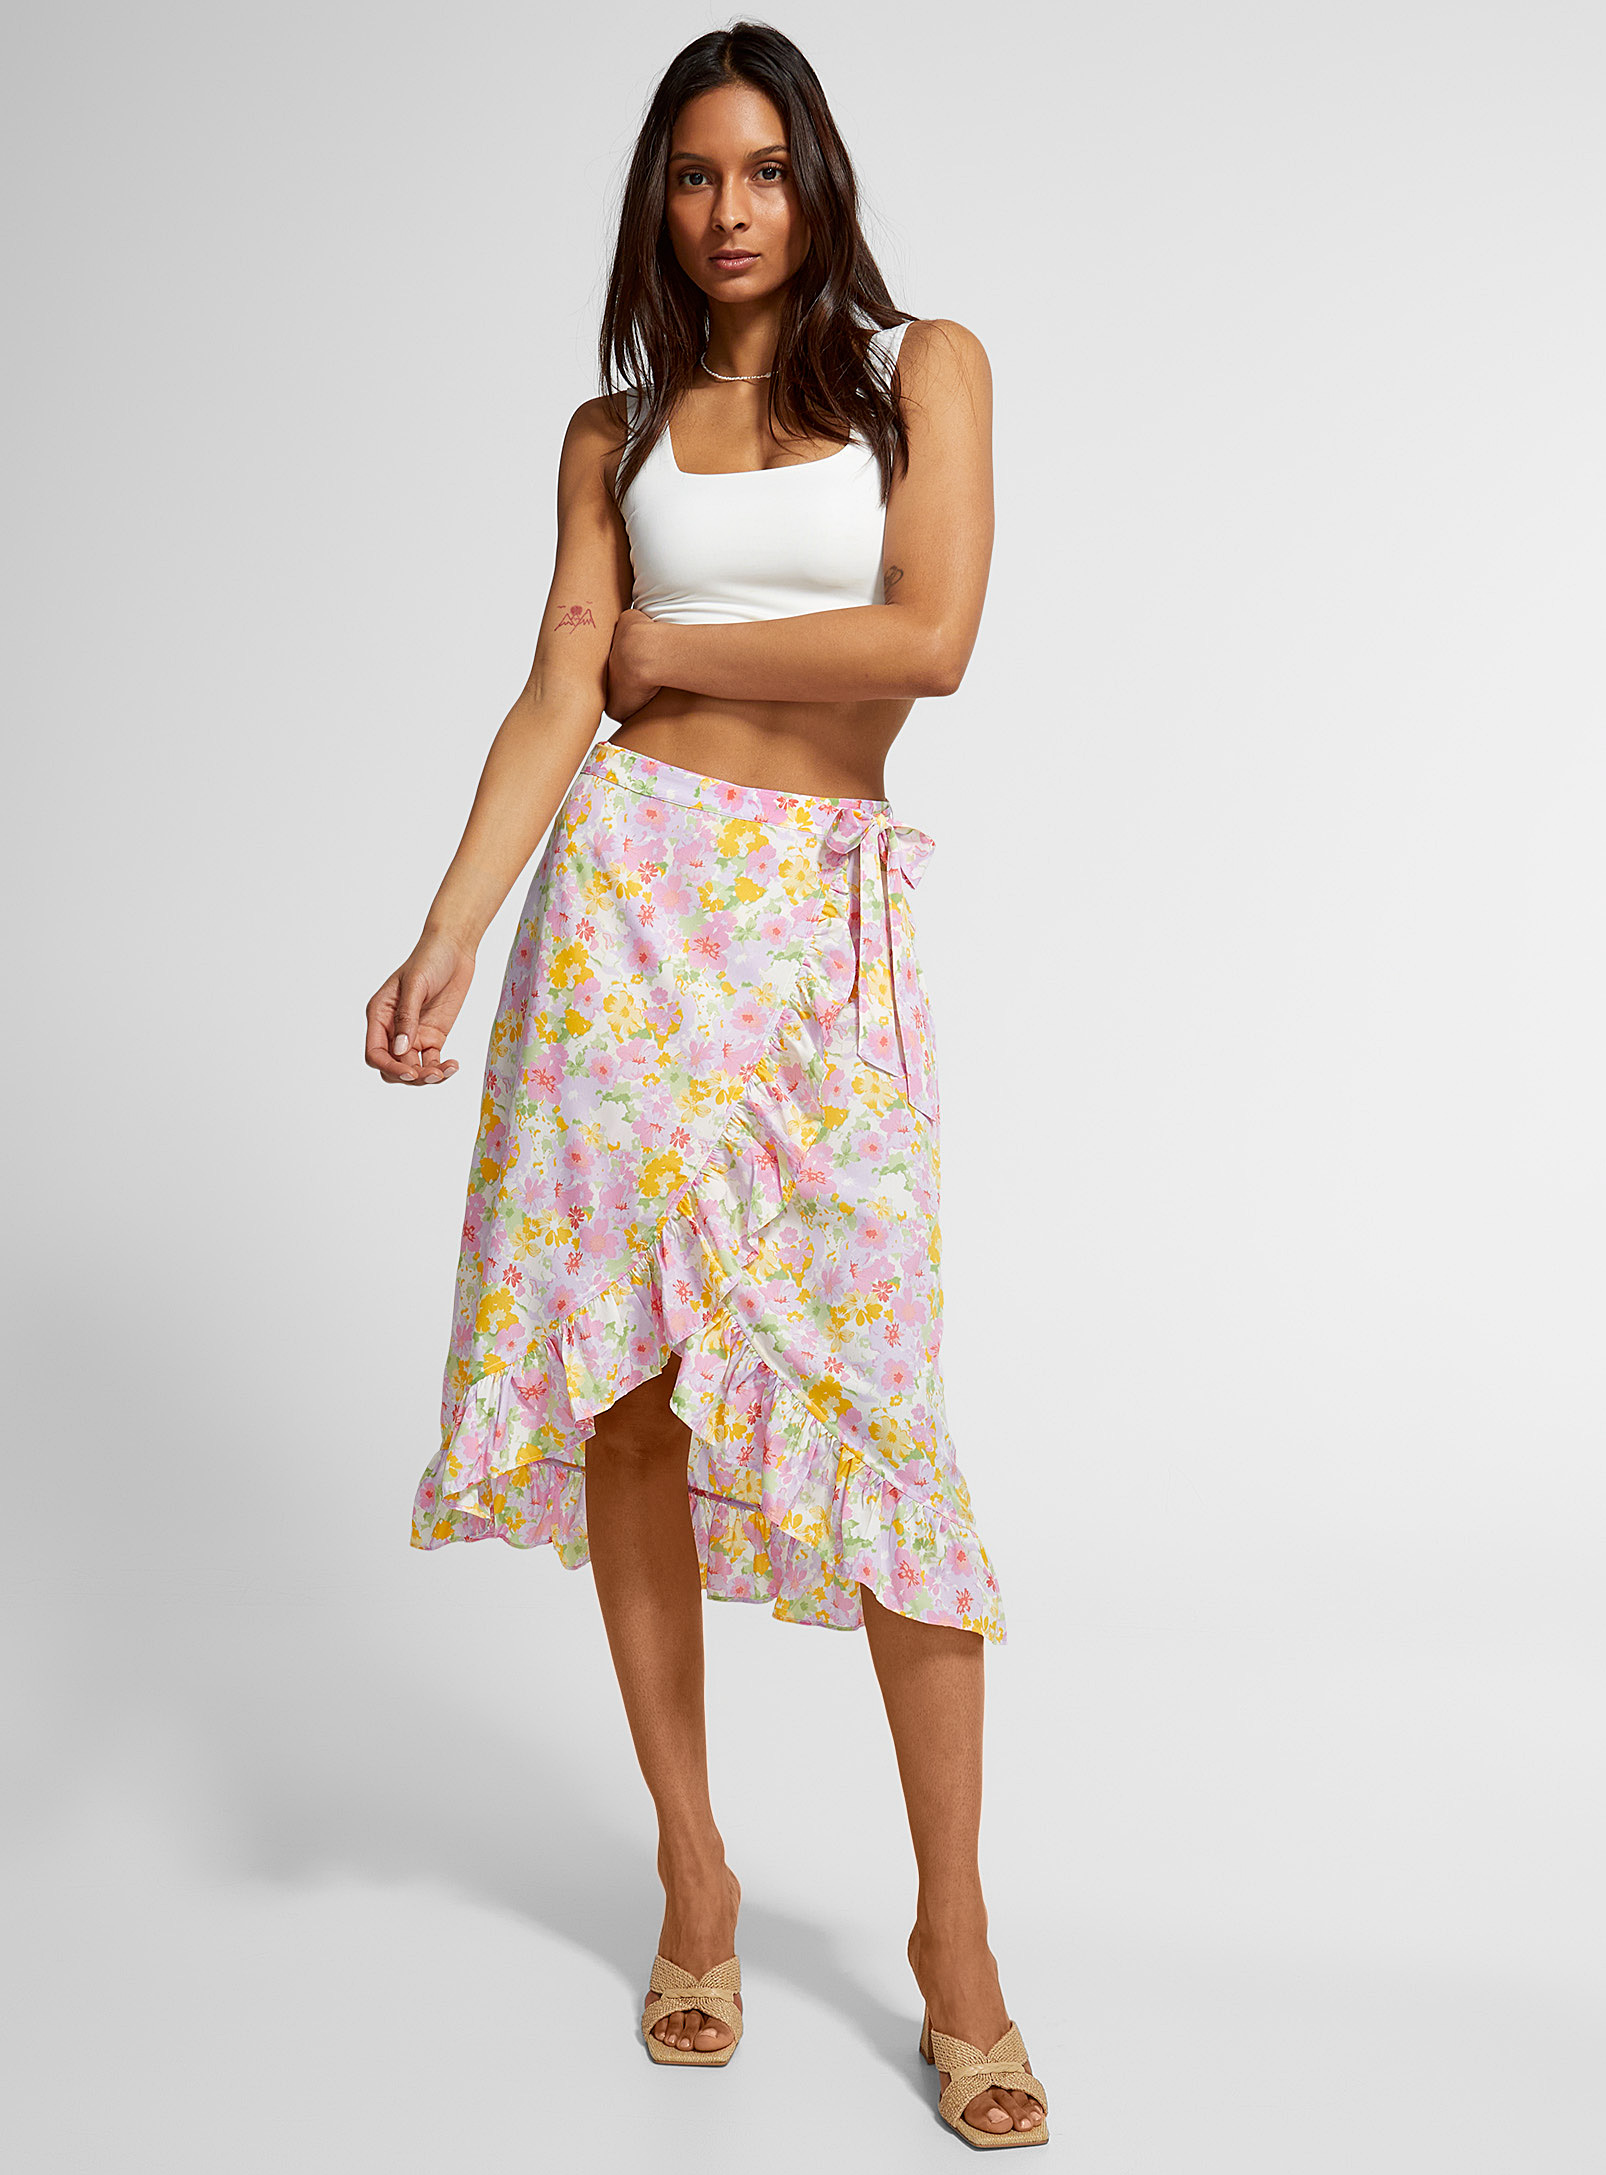 Skilt Bestil Nord Vero Moda Ruffled Wrap Skirt In Pink | ModeSens